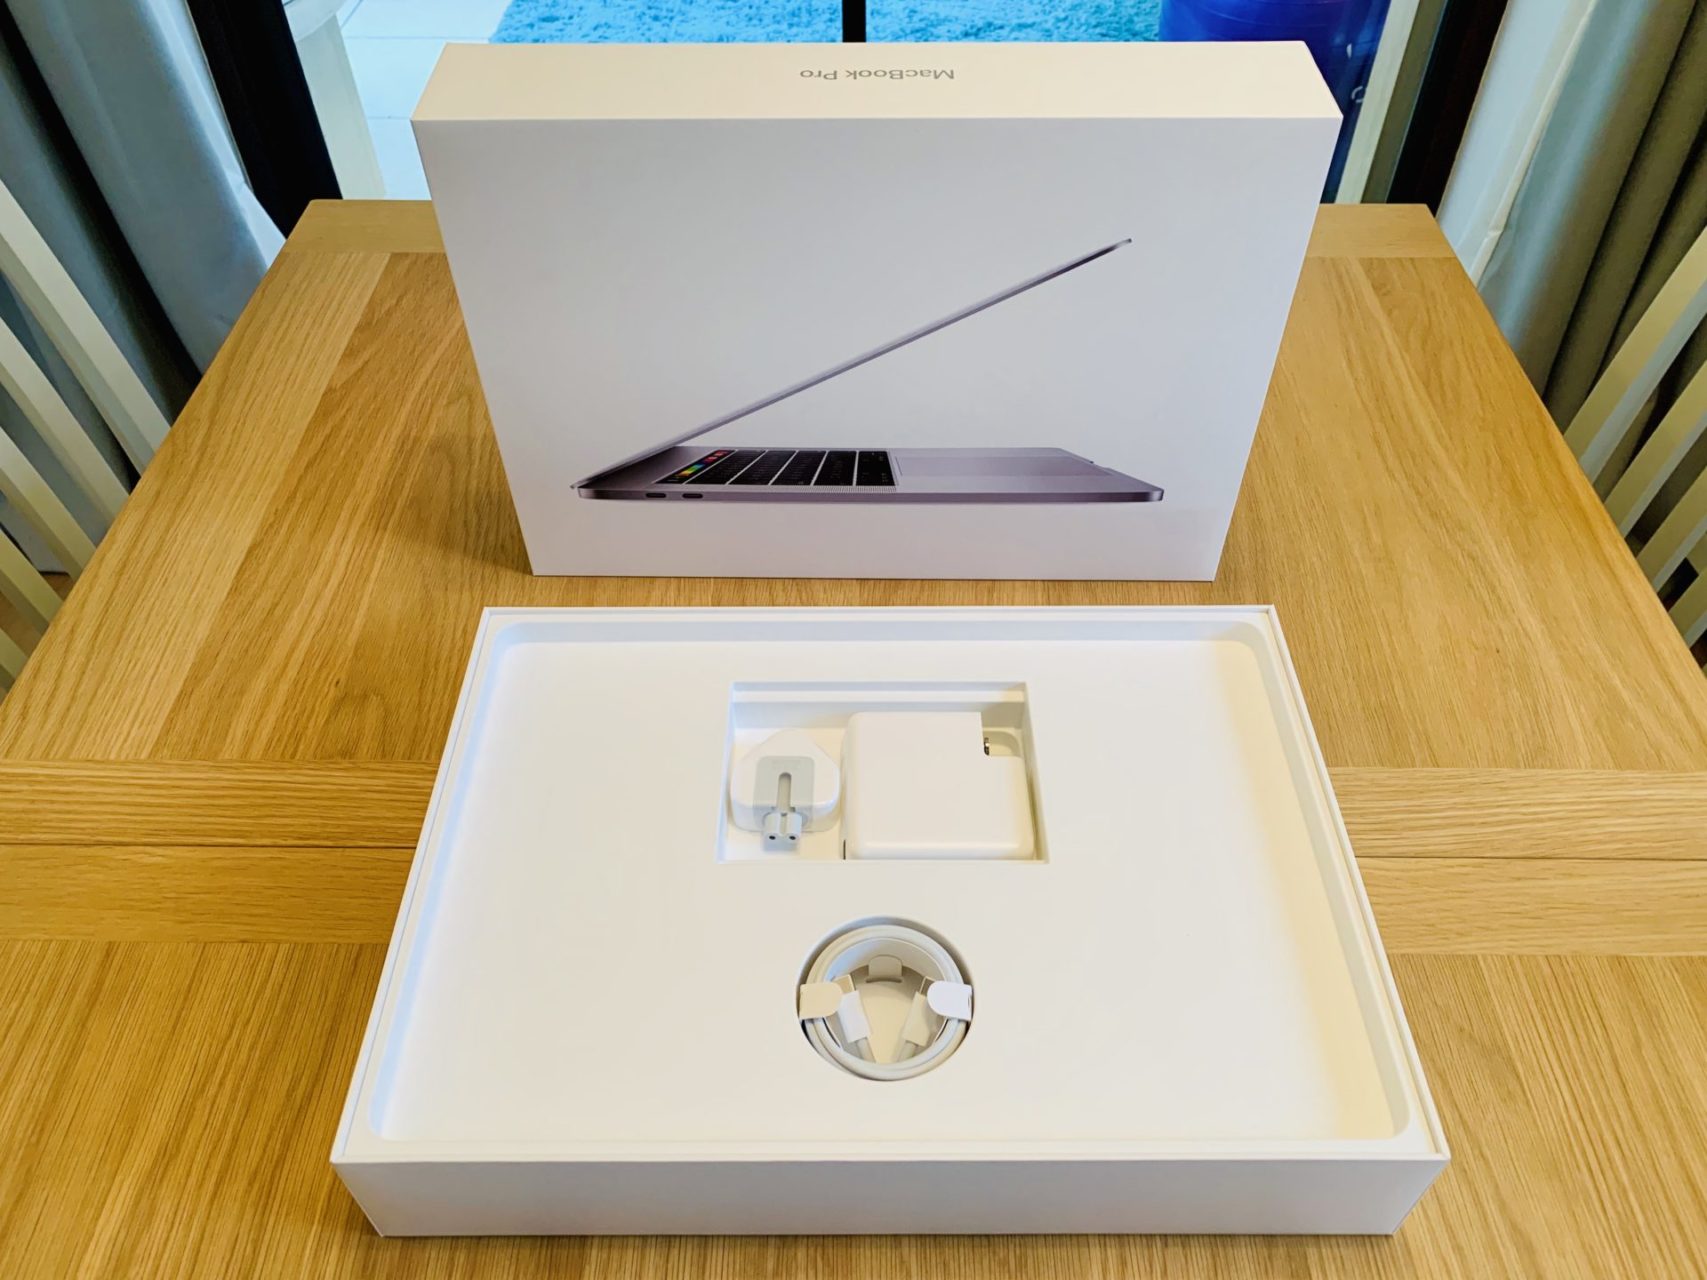 Apple MacBook Pro 15 inch unboxing